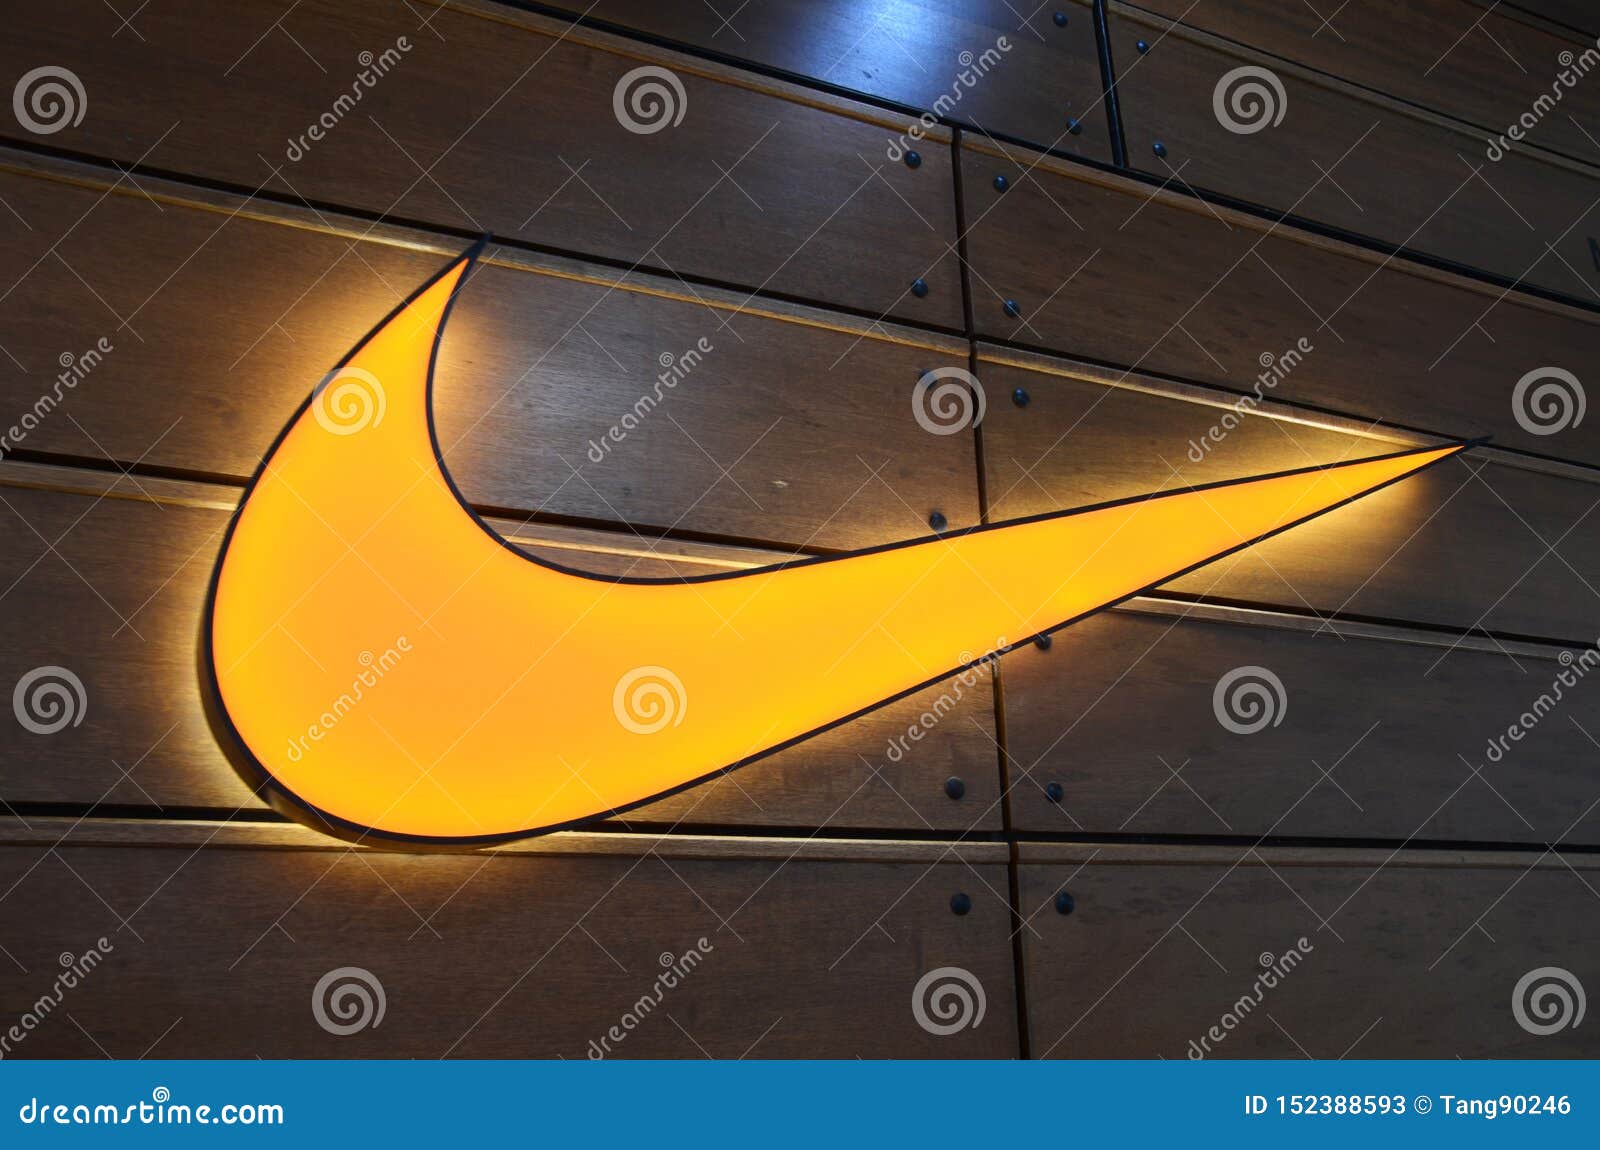 Logotipo De La Marca De Nike Foto archivo - Imagen de ciudad, manera: 152388593